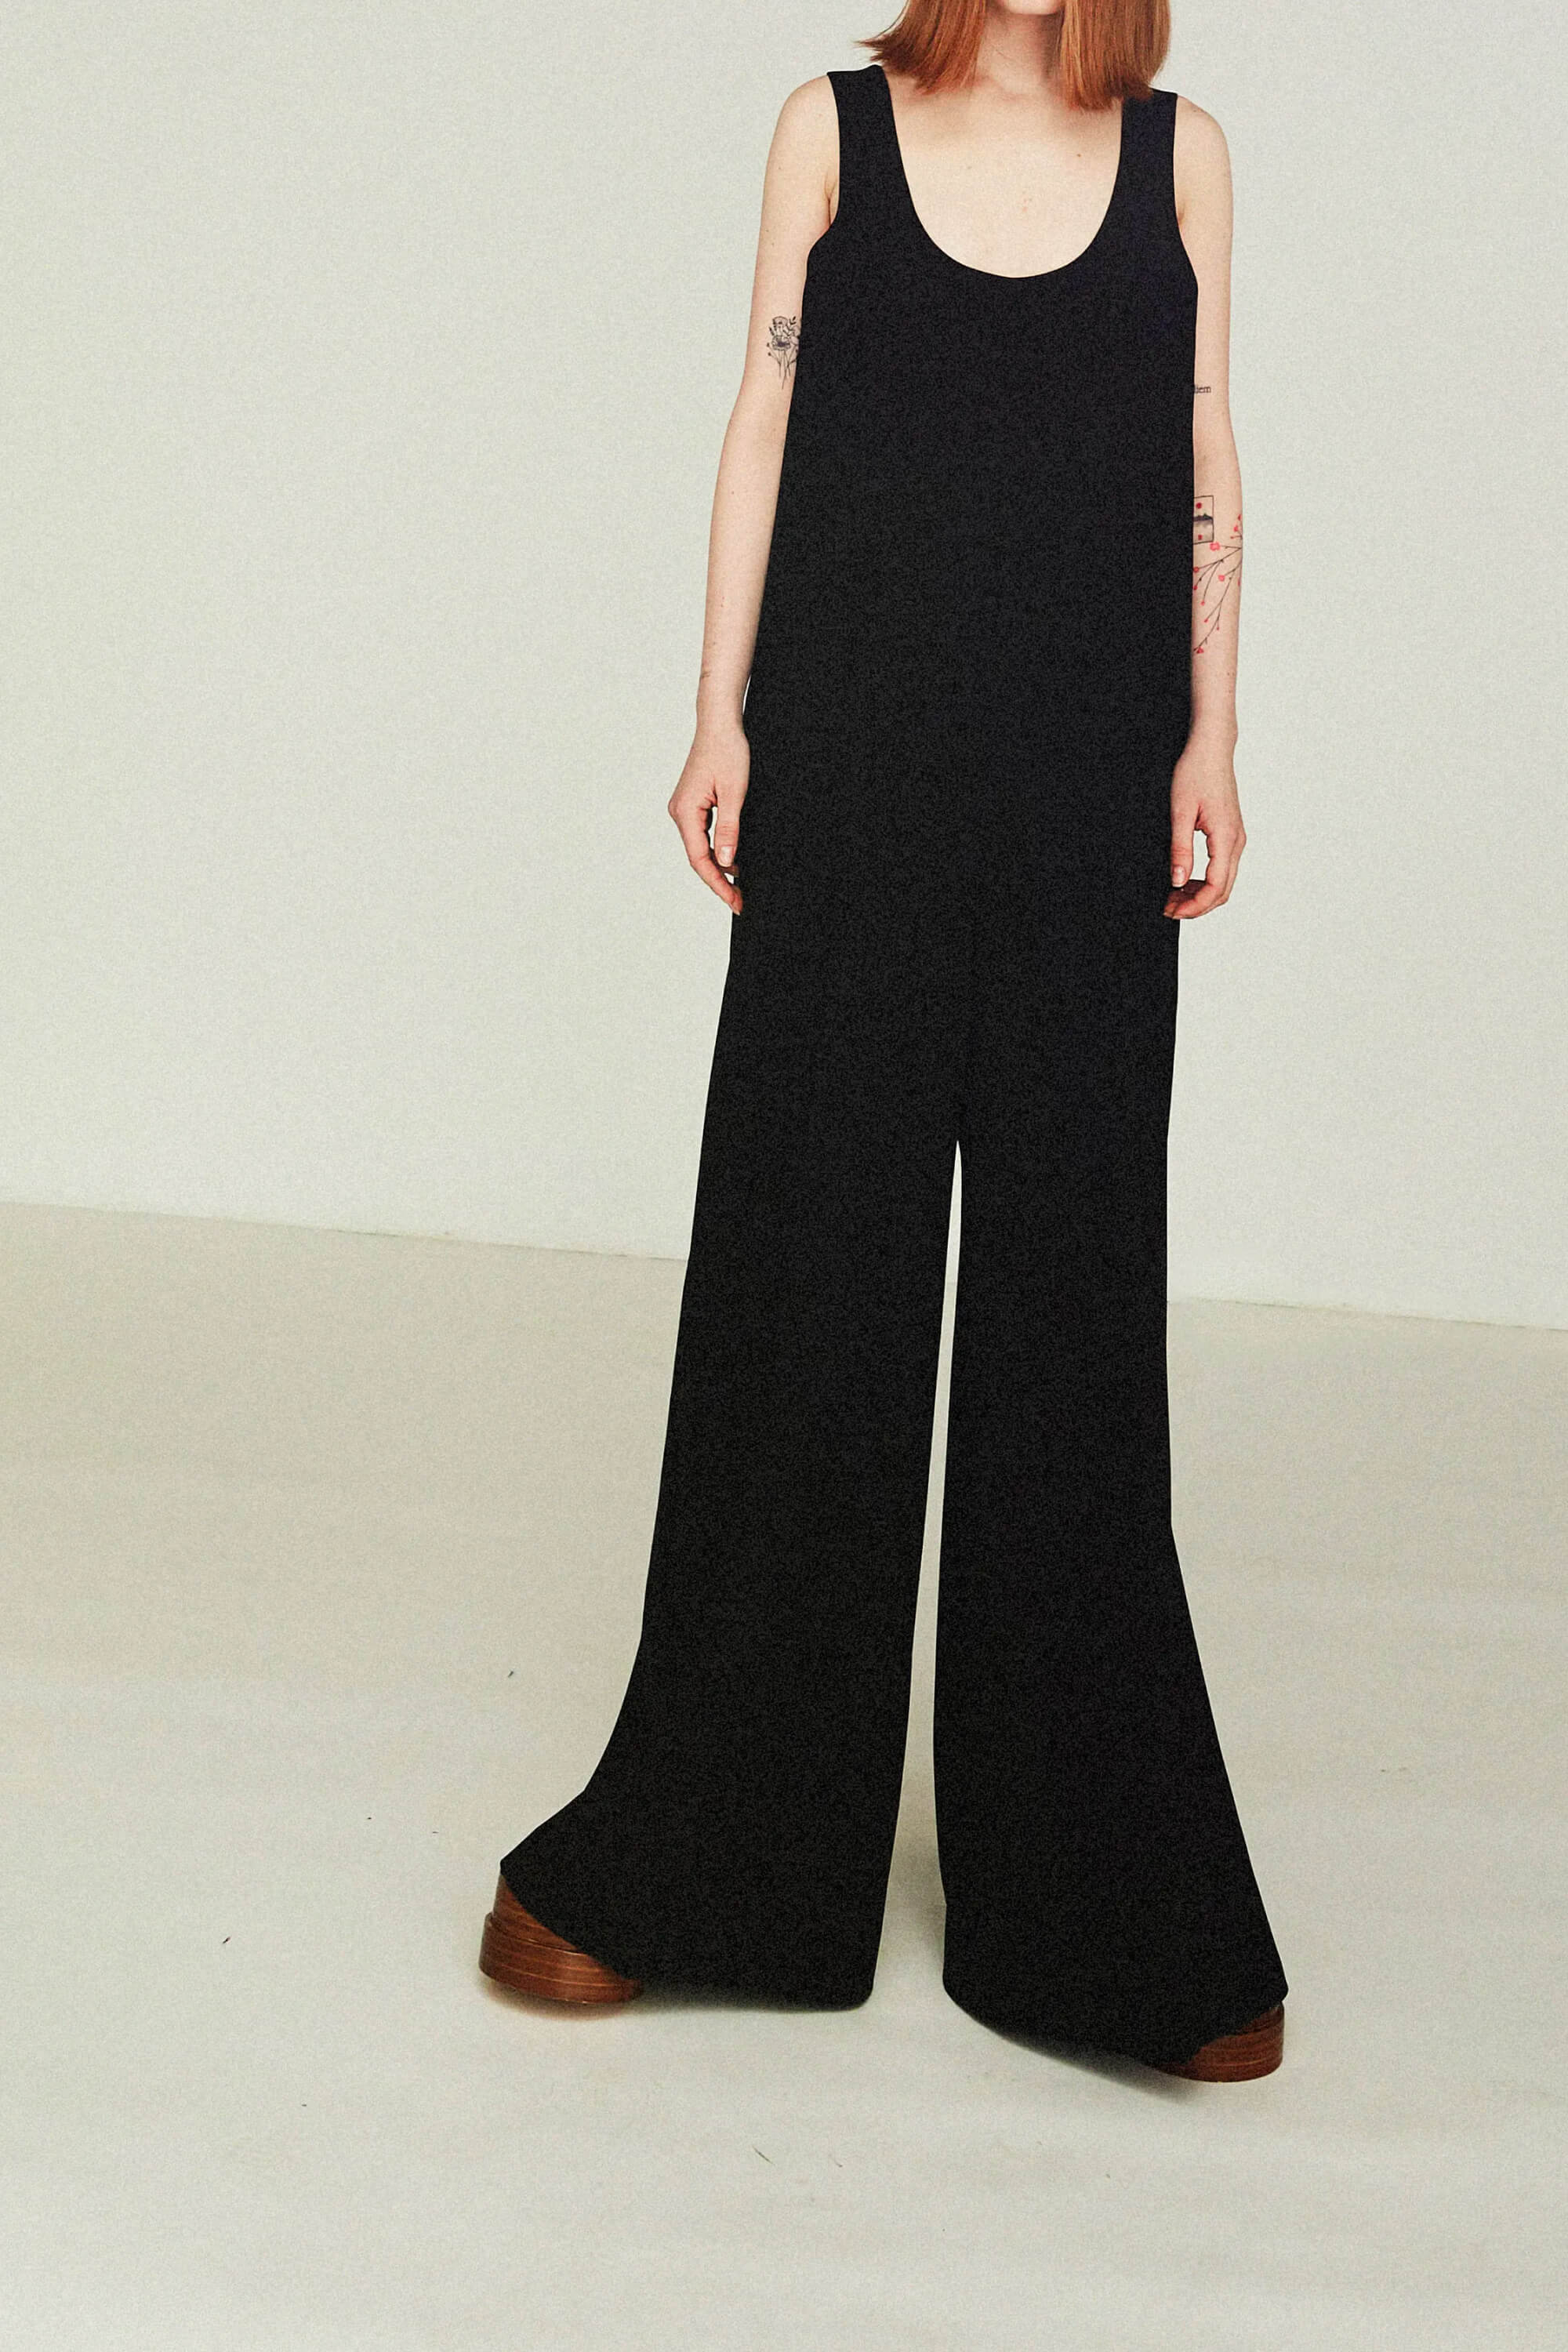 Designer pants for women A.W.A.K.E. Mode luxury fashion